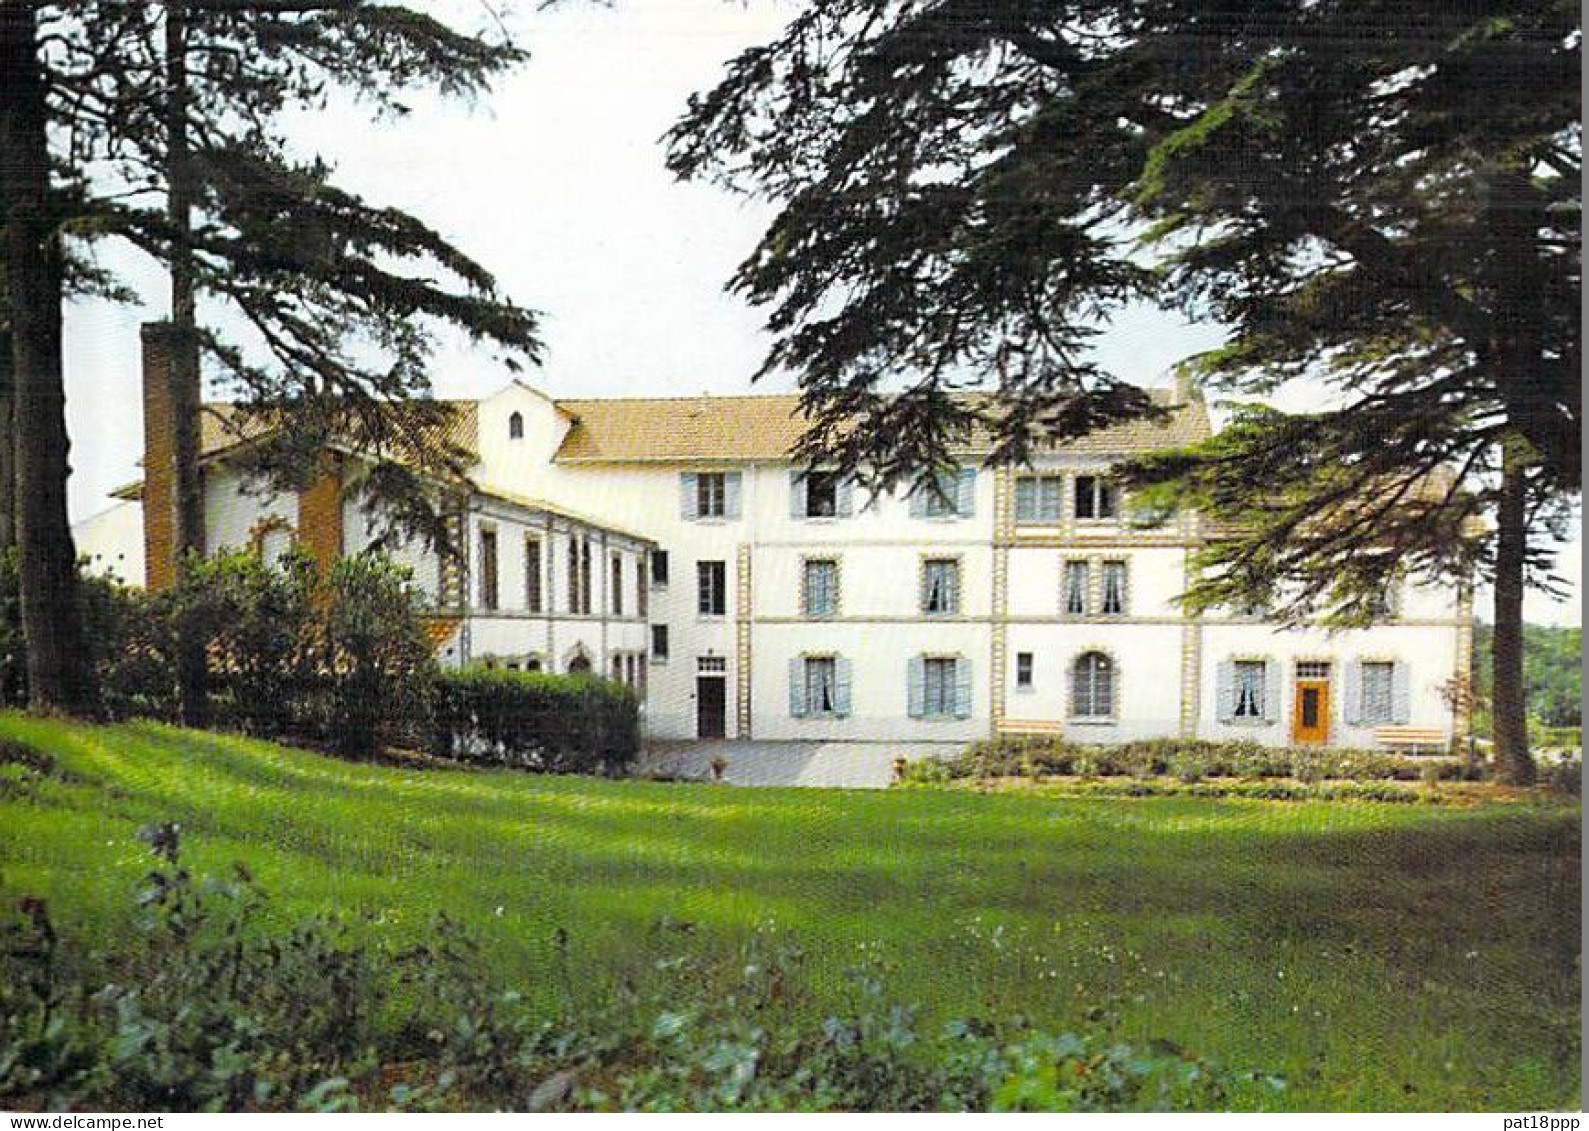 SANTE - HÔPITAL et Hotel-Dieu - Lot de 20 Cartes FRANCE (12 CPSM et 8 CPM grand format)